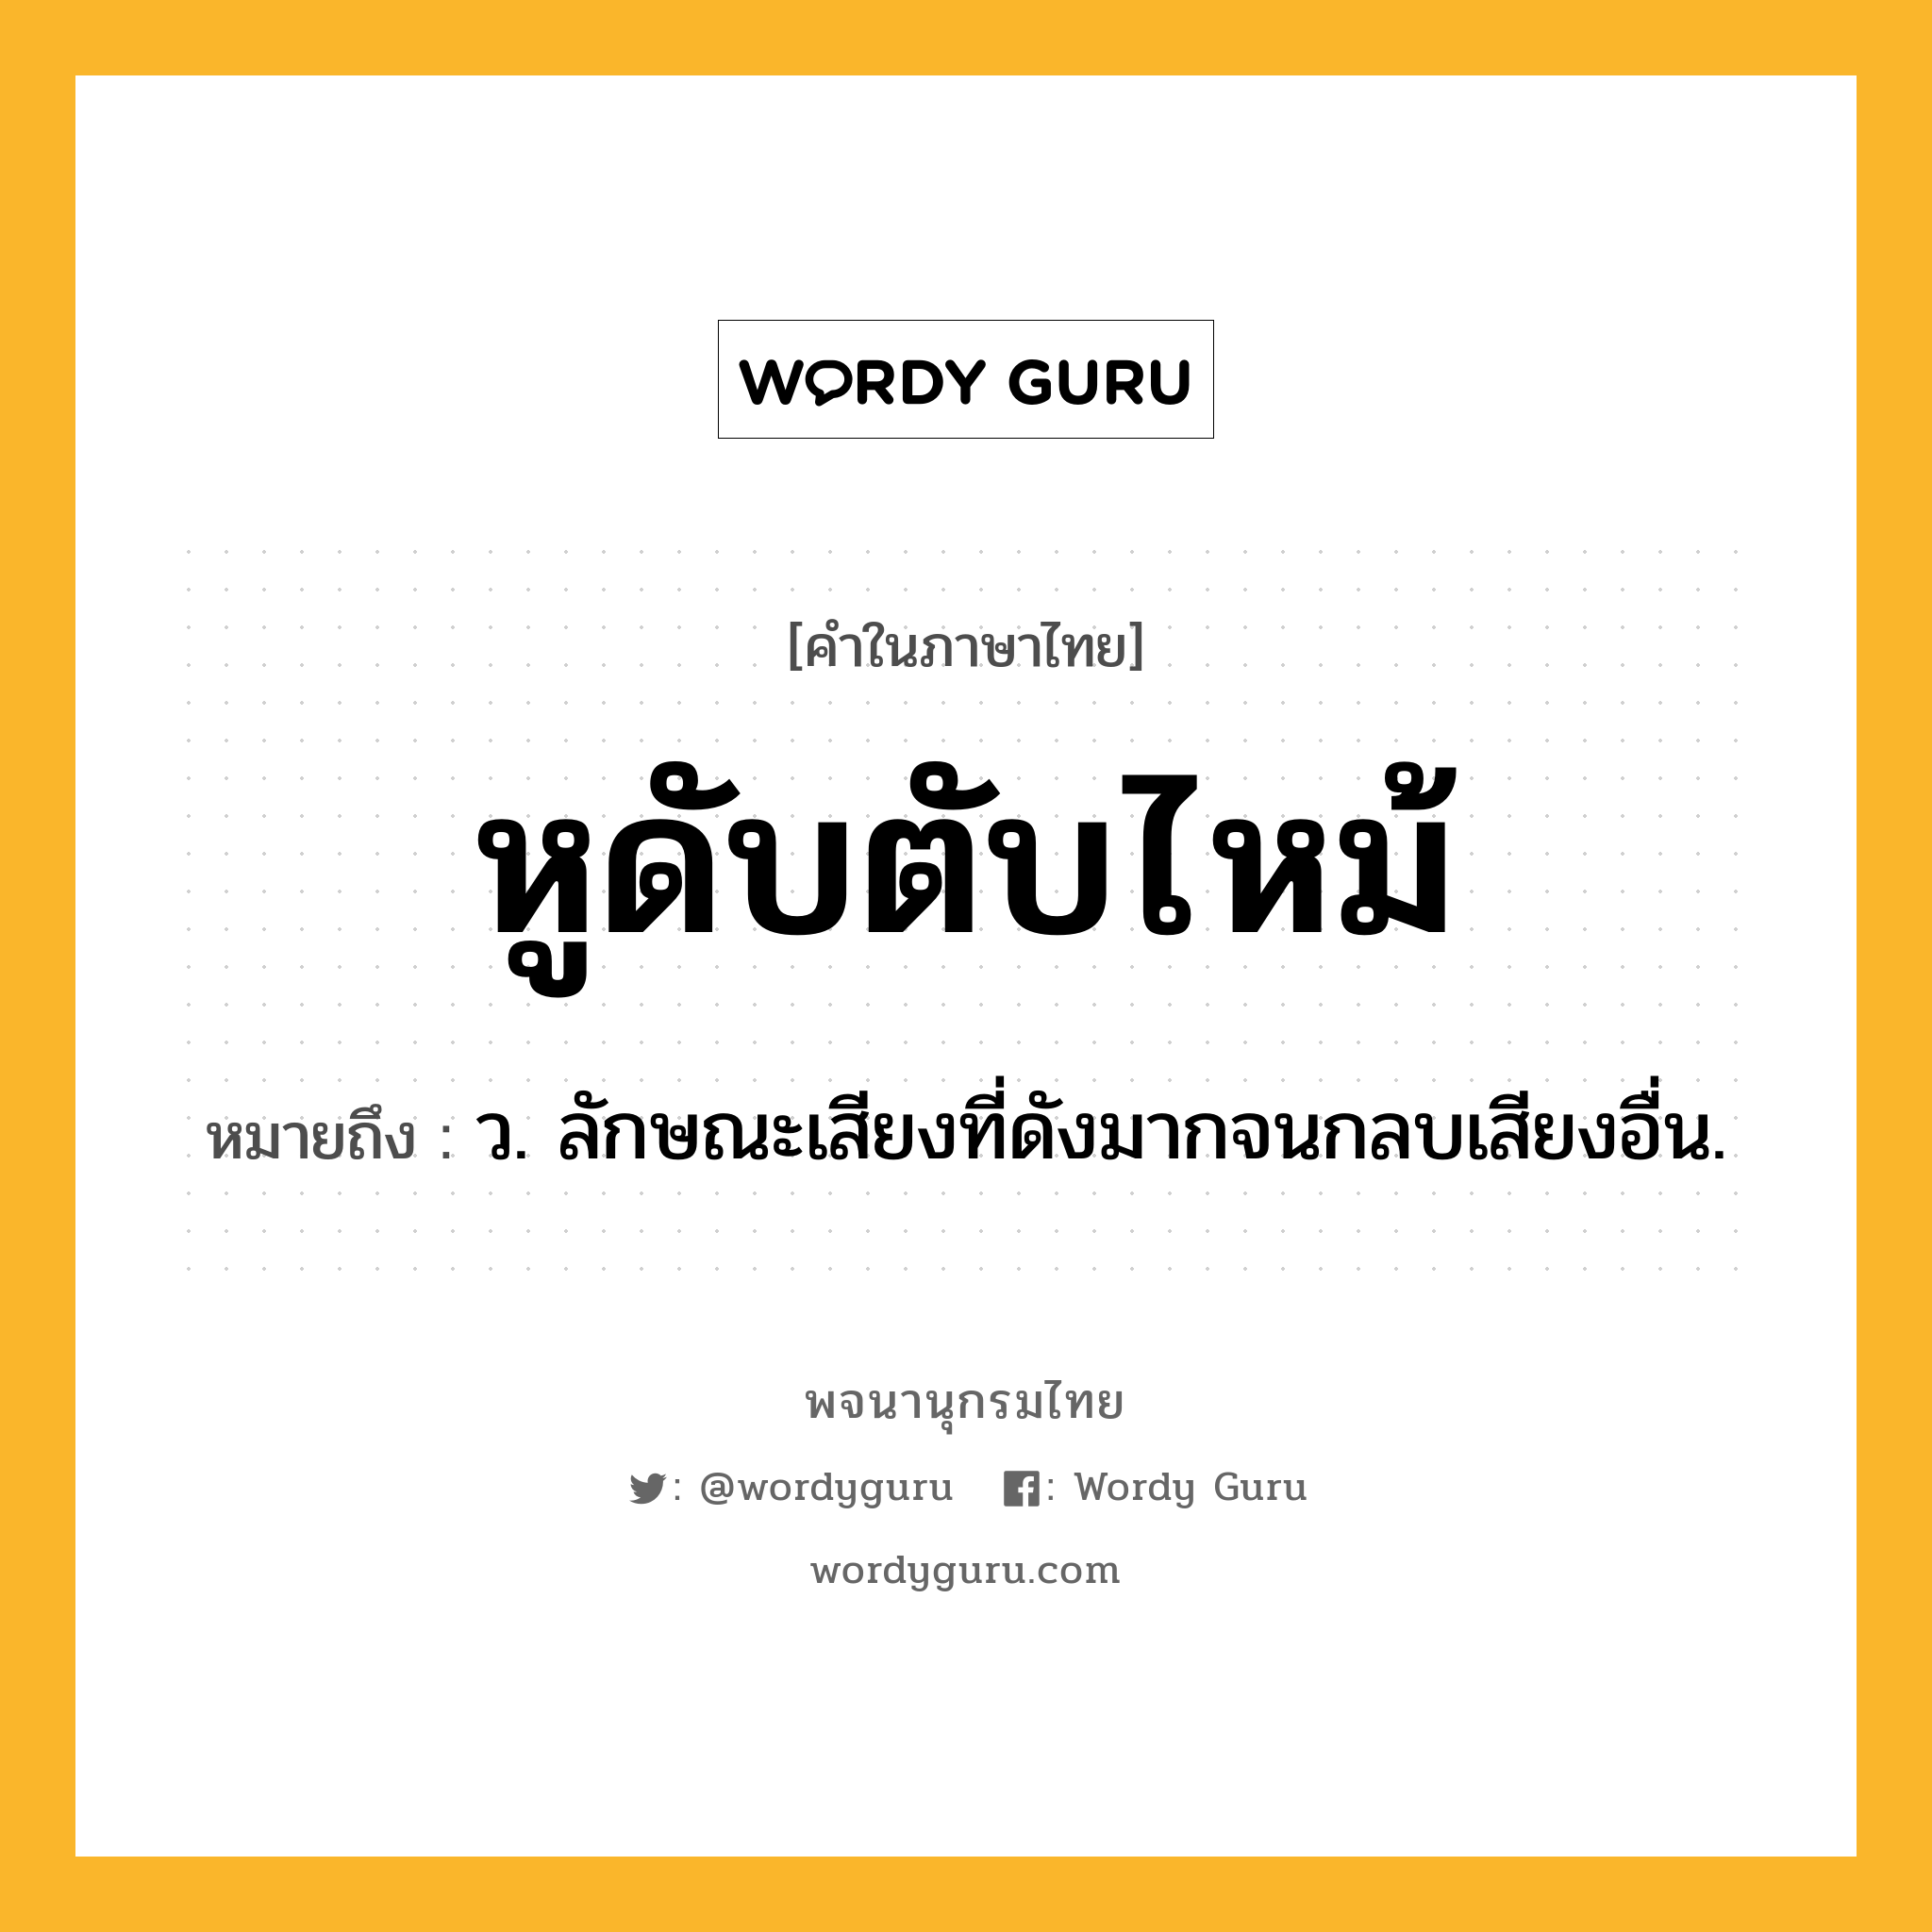 หูดับตับไหม้ ความหมาย หมายถึงอะไร?, คำในภาษาไทย หูดับตับไหม้ หมายถึง ว. ลักษณะเสียงที่ดังมากจนกลบเสียงอื่น.